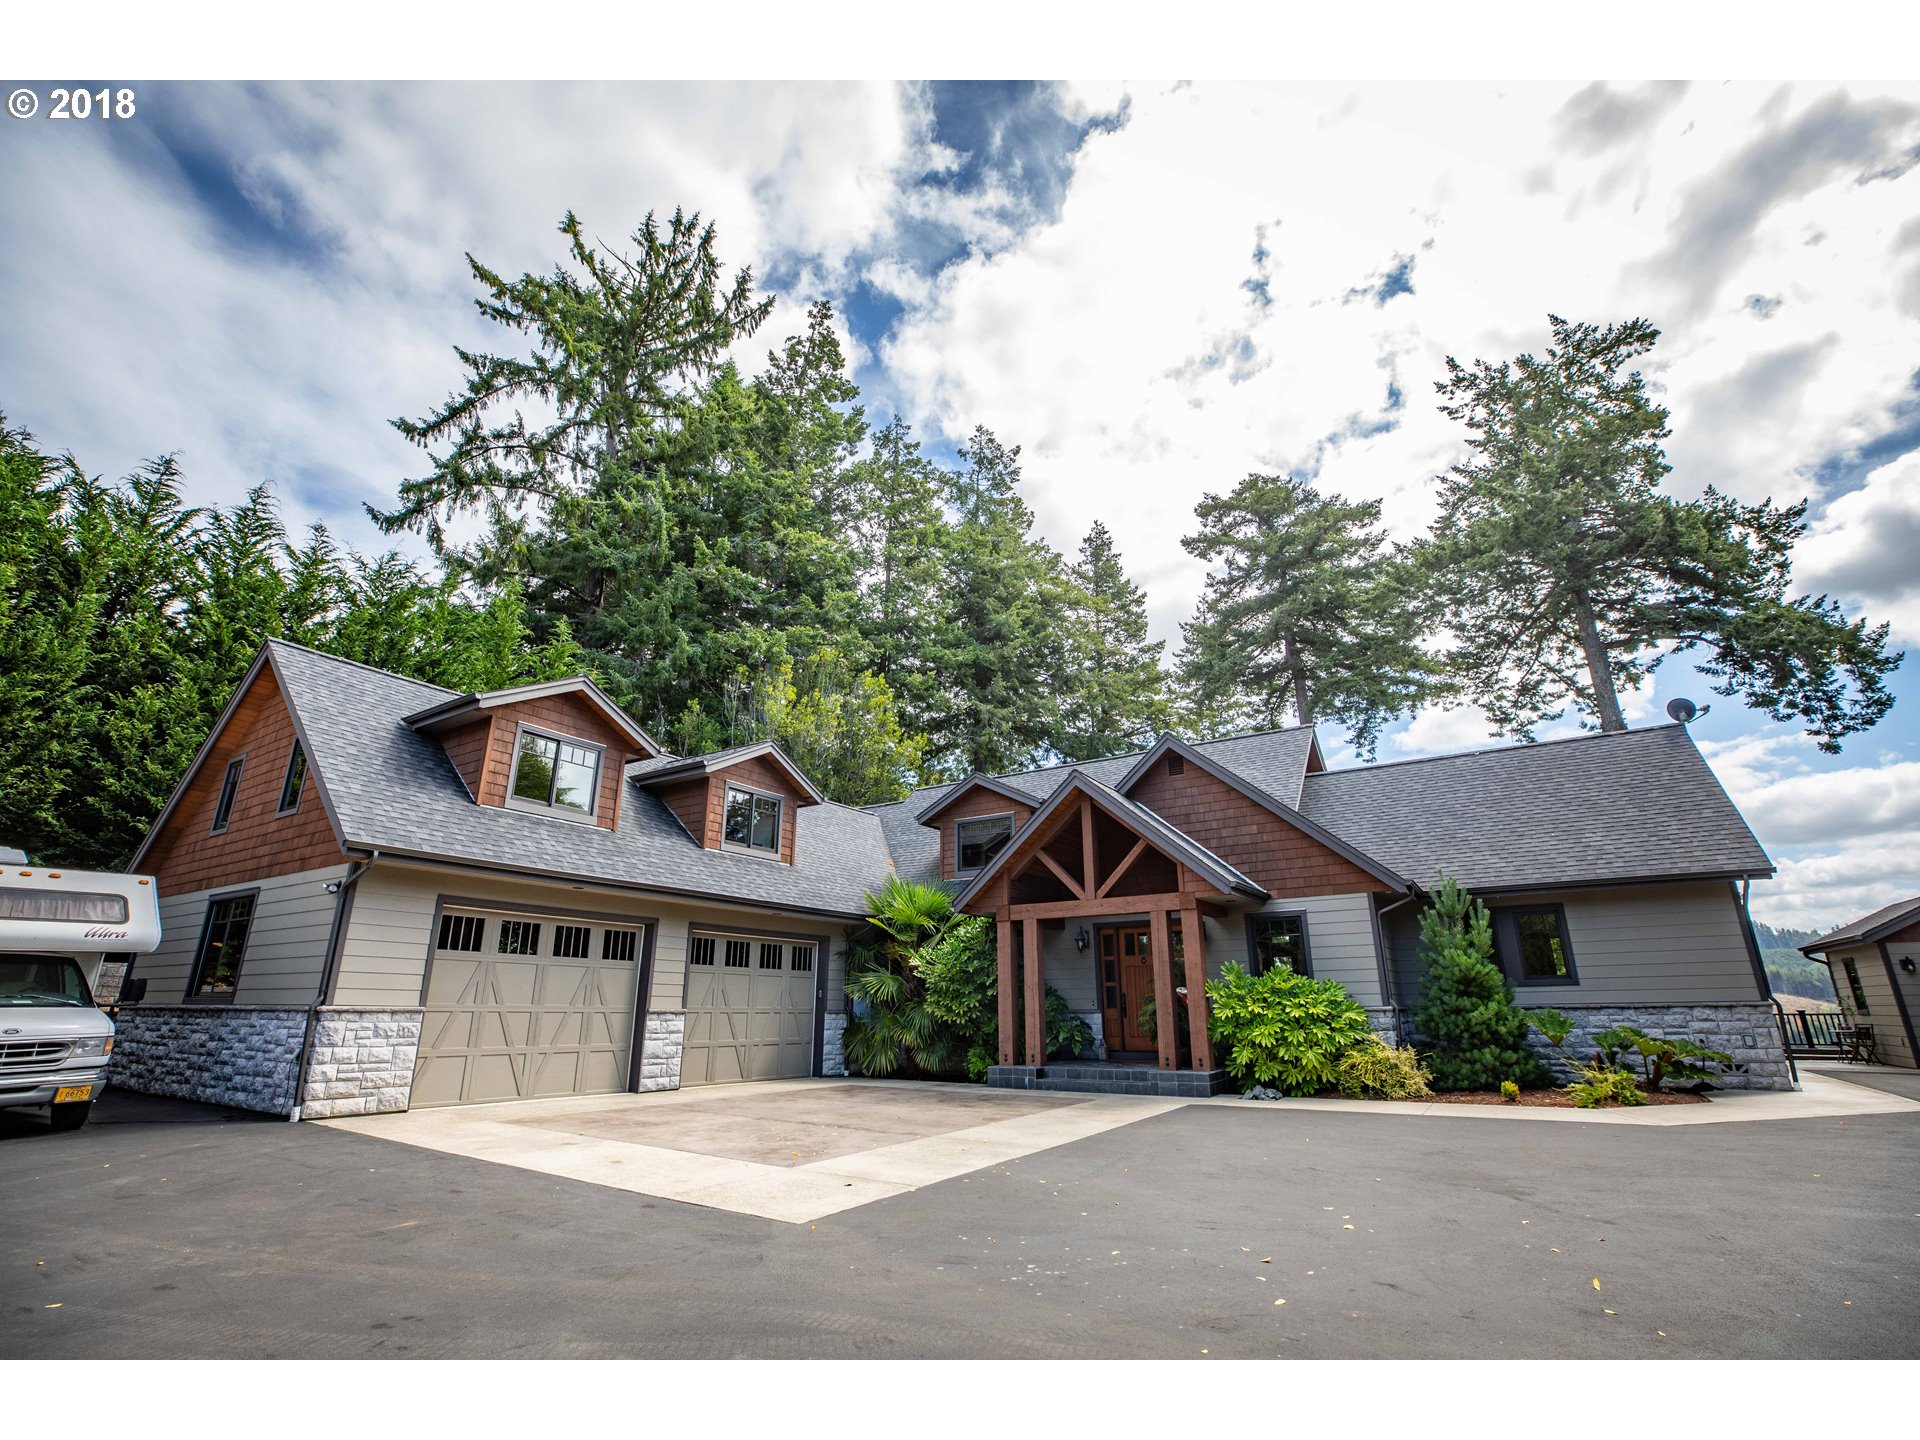 Coos Bay Oregon Real Estate | Coos Bay Homes for Sale